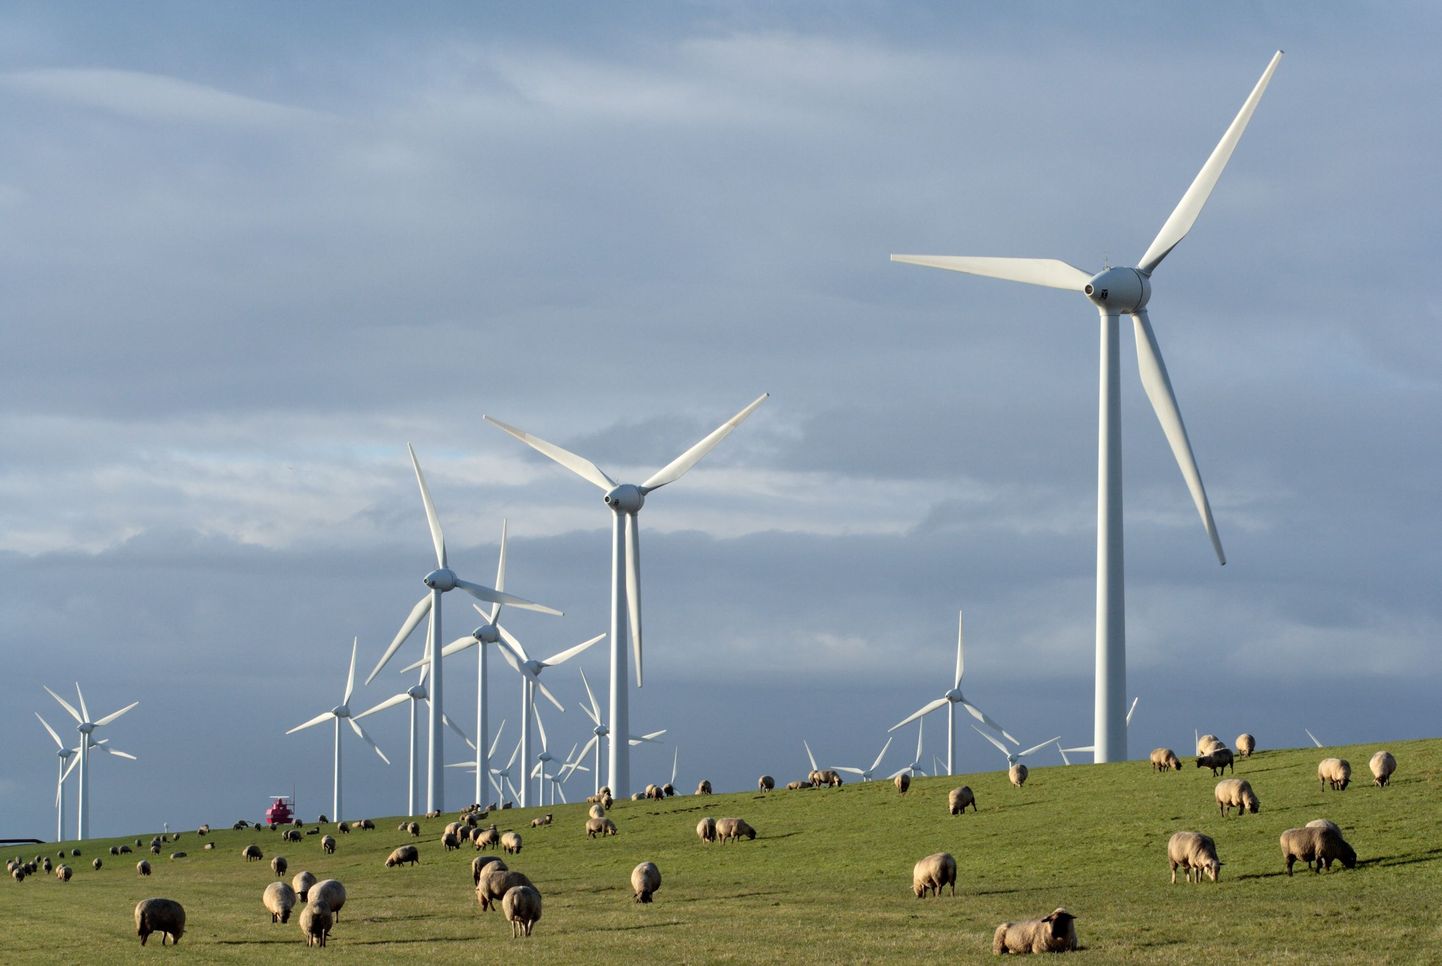 Päikeseelektrijaamades on muruniidukite asemel hakatud kasutama lambaid. Pildil näksivad neljajalgsed rohtu Saksamaal tuulikute väljal.